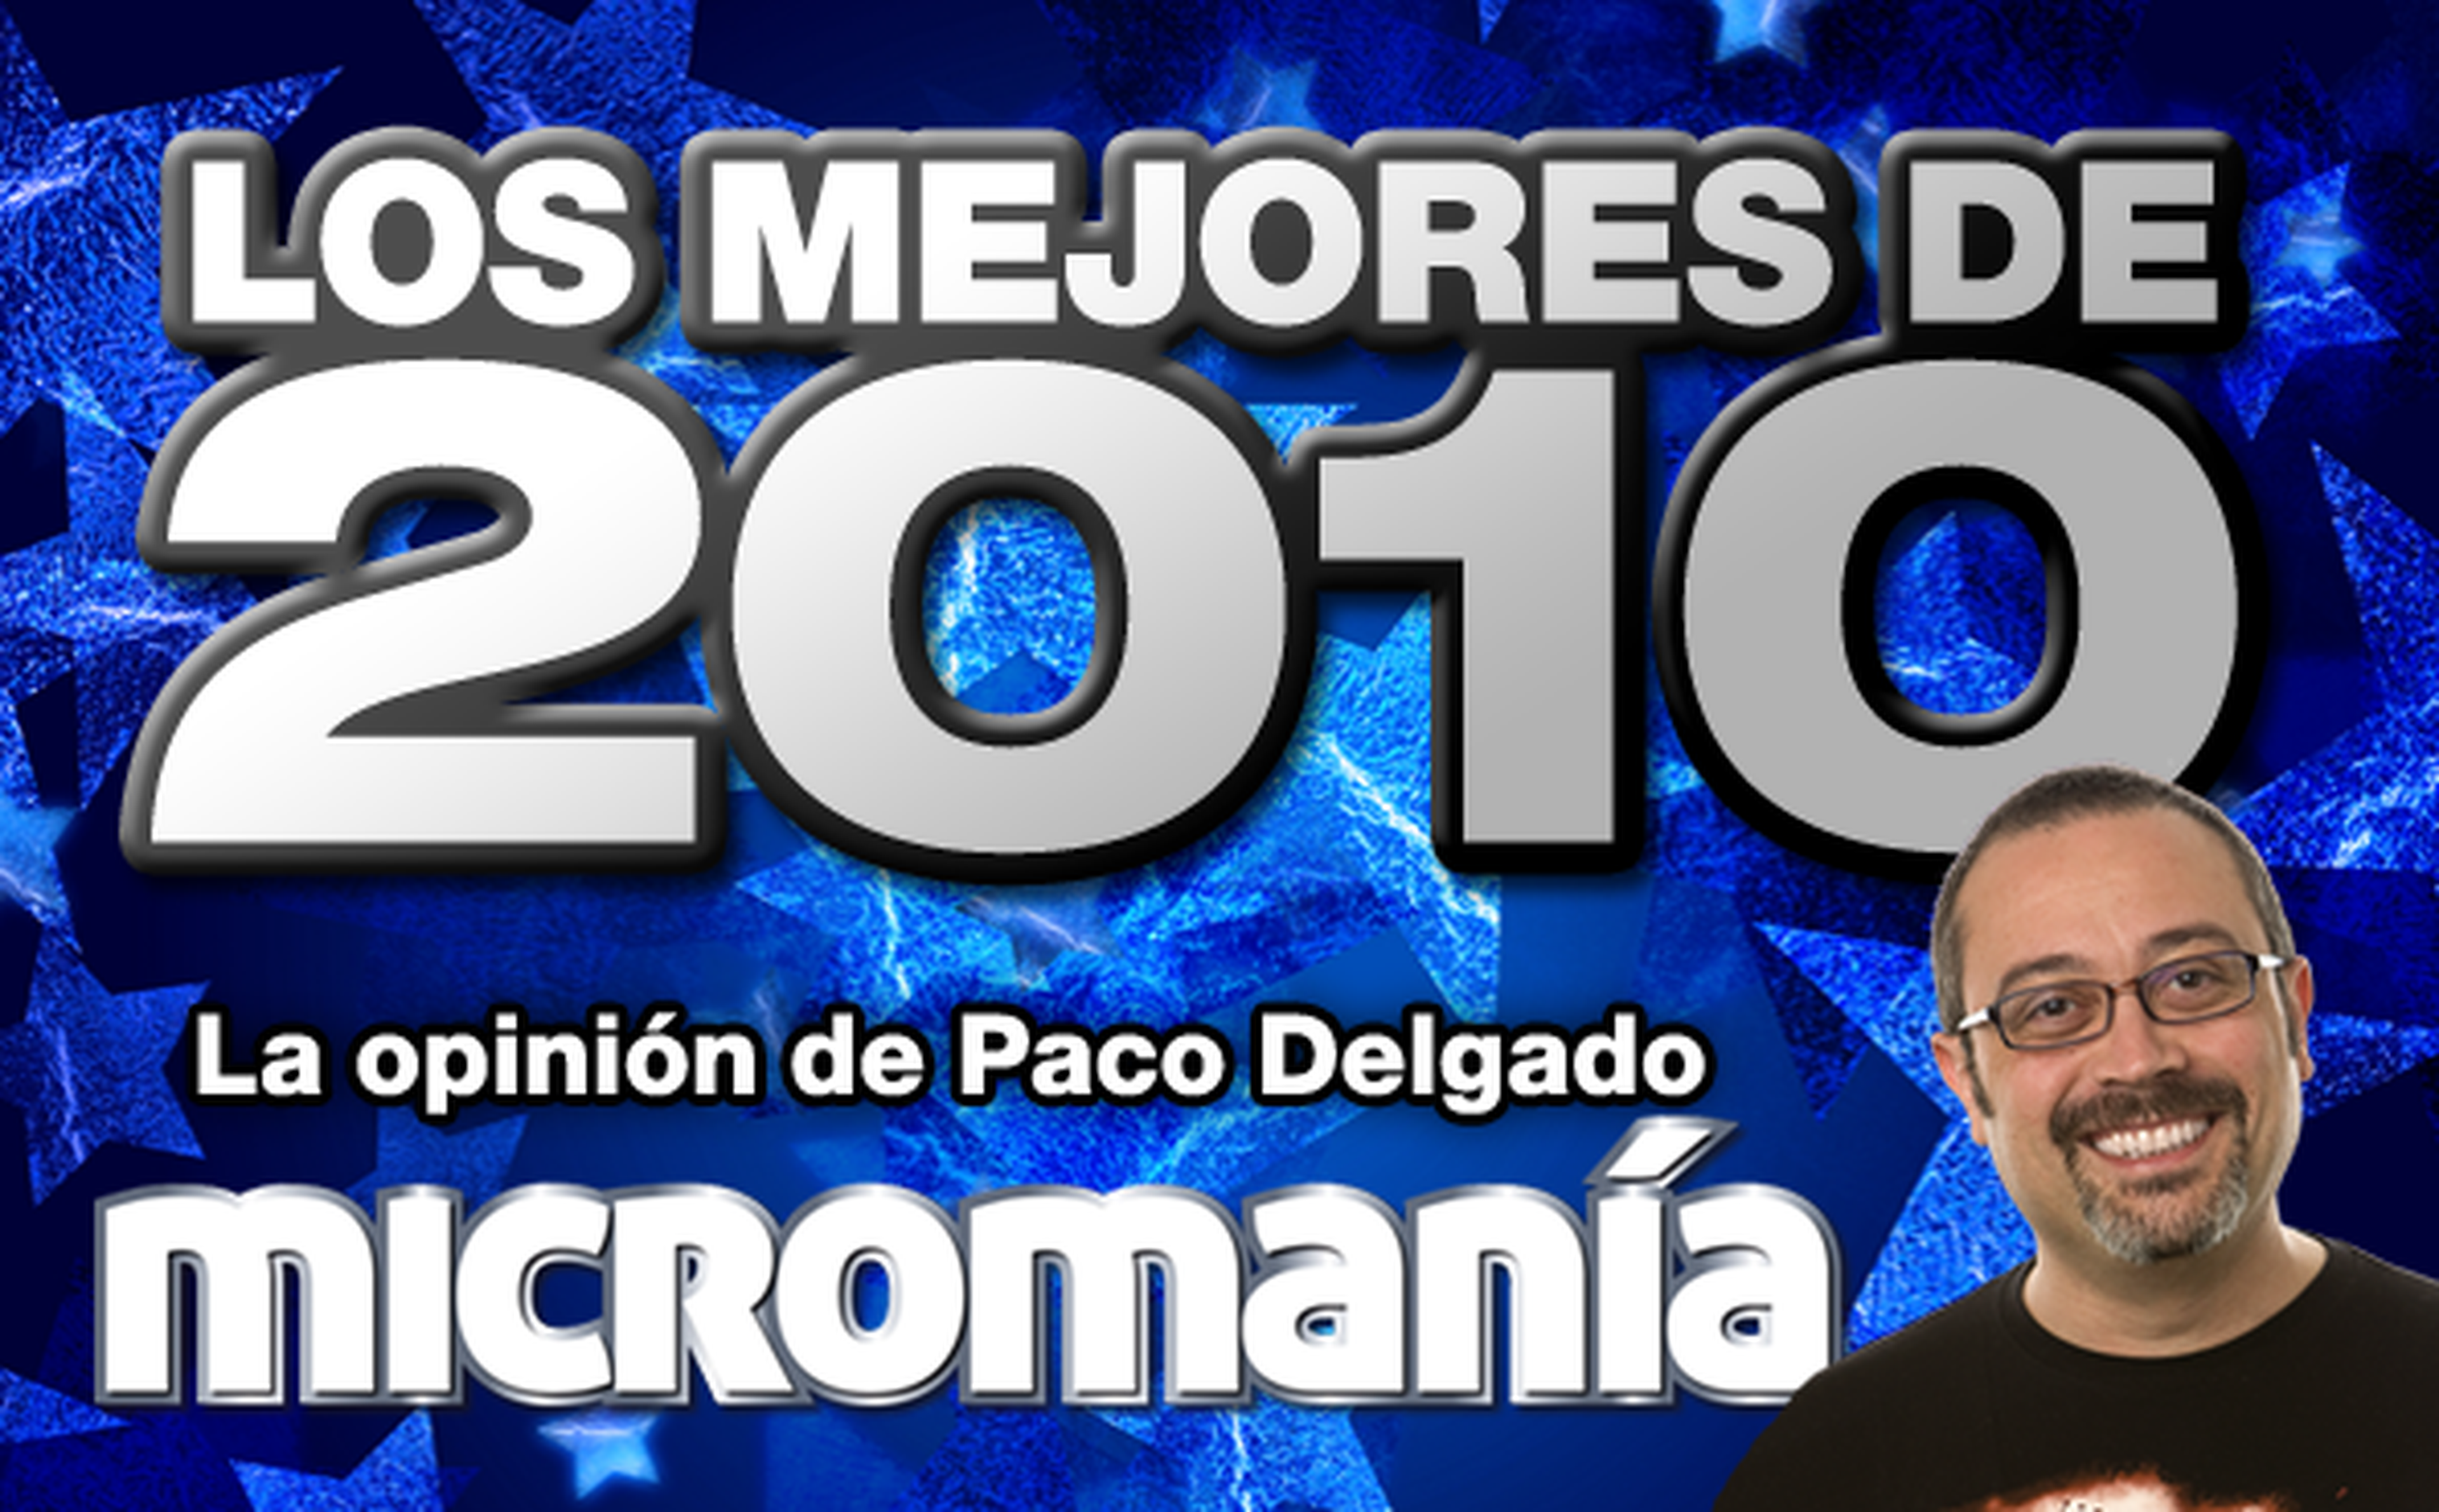 Los mejores de 2010: Paco Delgado